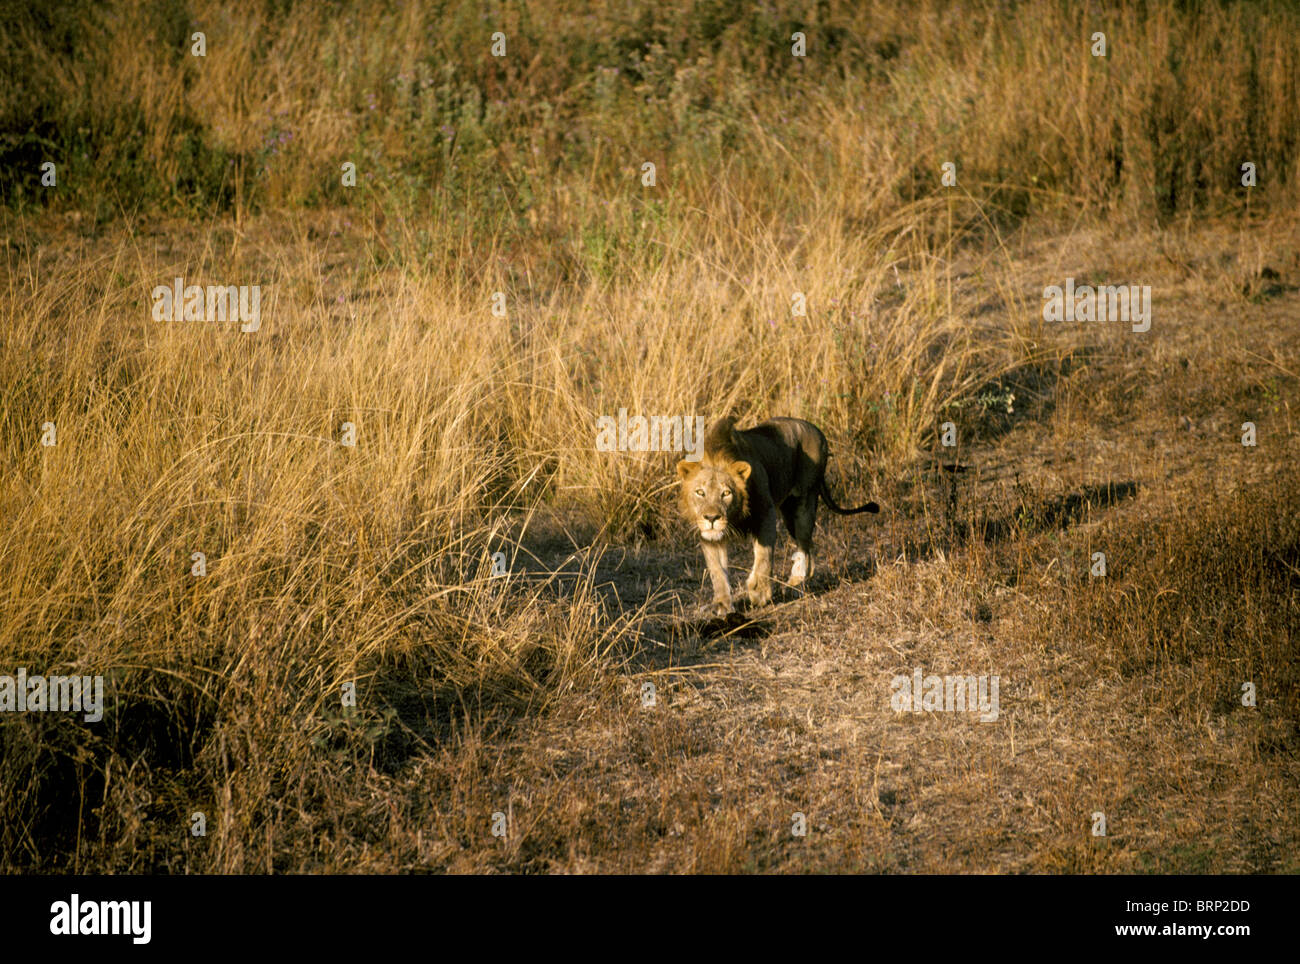 Vue aérienne d'un seul lion (Panthera leo) Balade dans les prairies sèches Banque D'Images